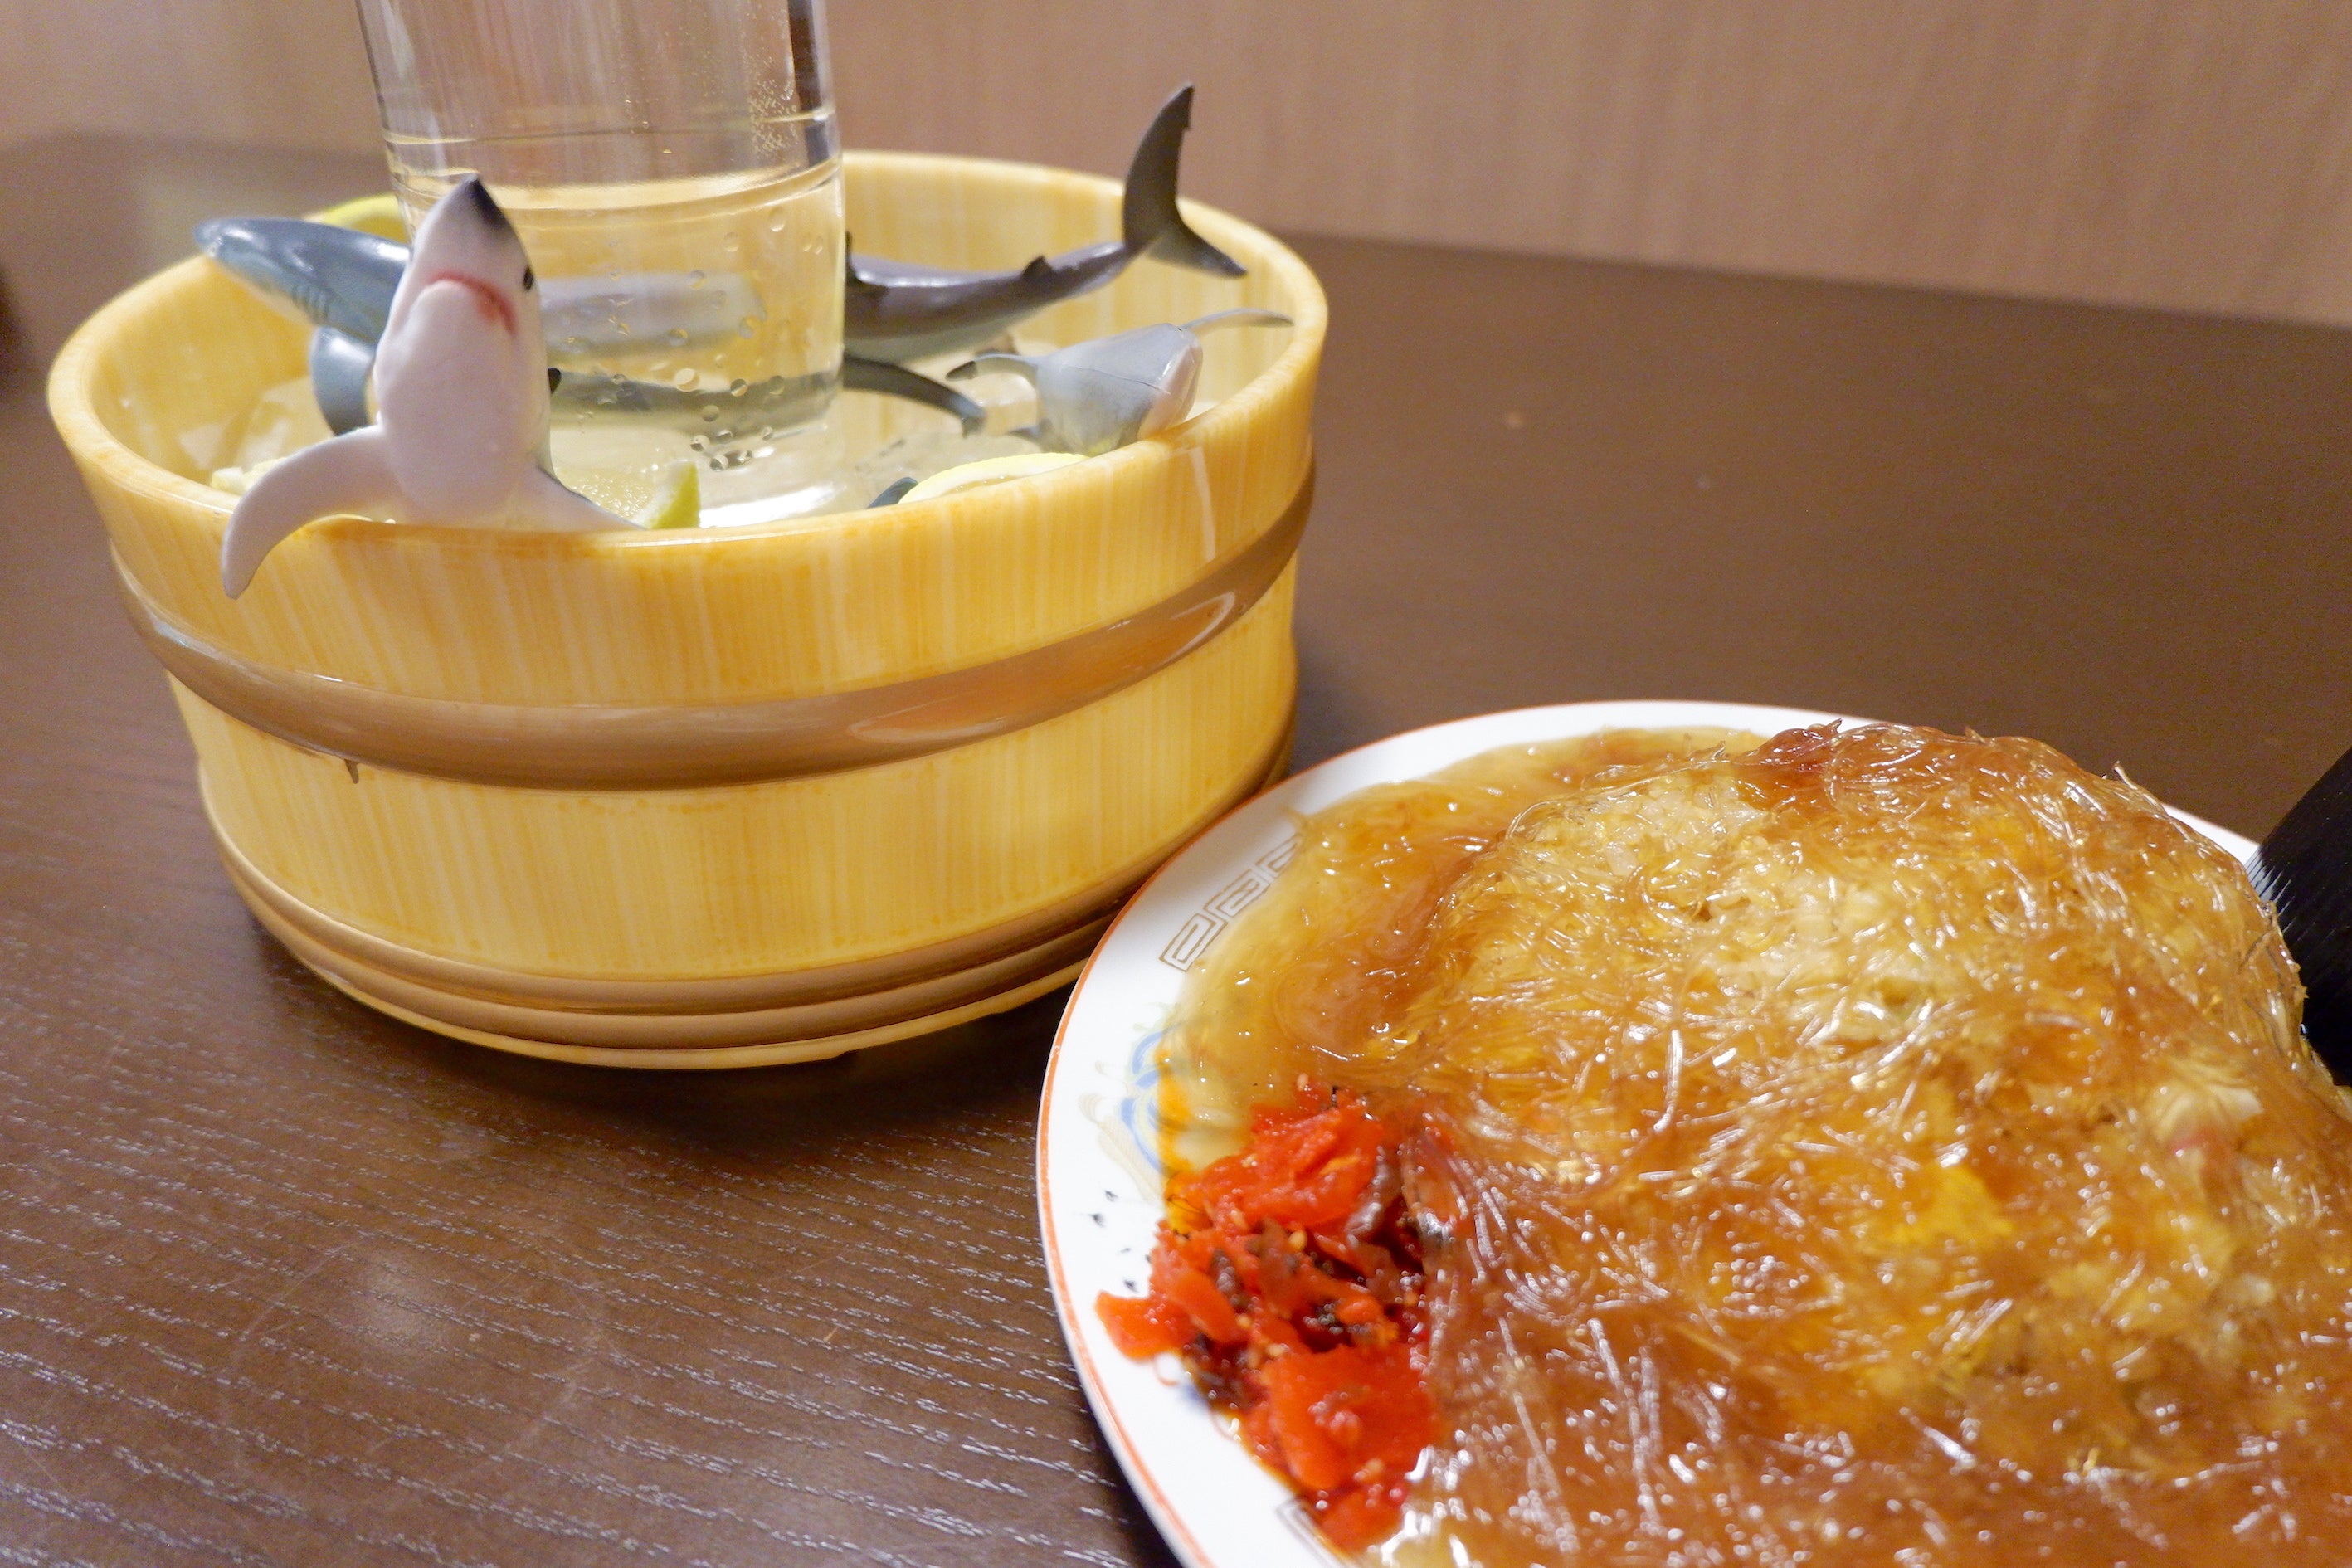 中華料理店「熱海飯店」が映画「温泉シャーク」との公式コラボメニューを販売開始